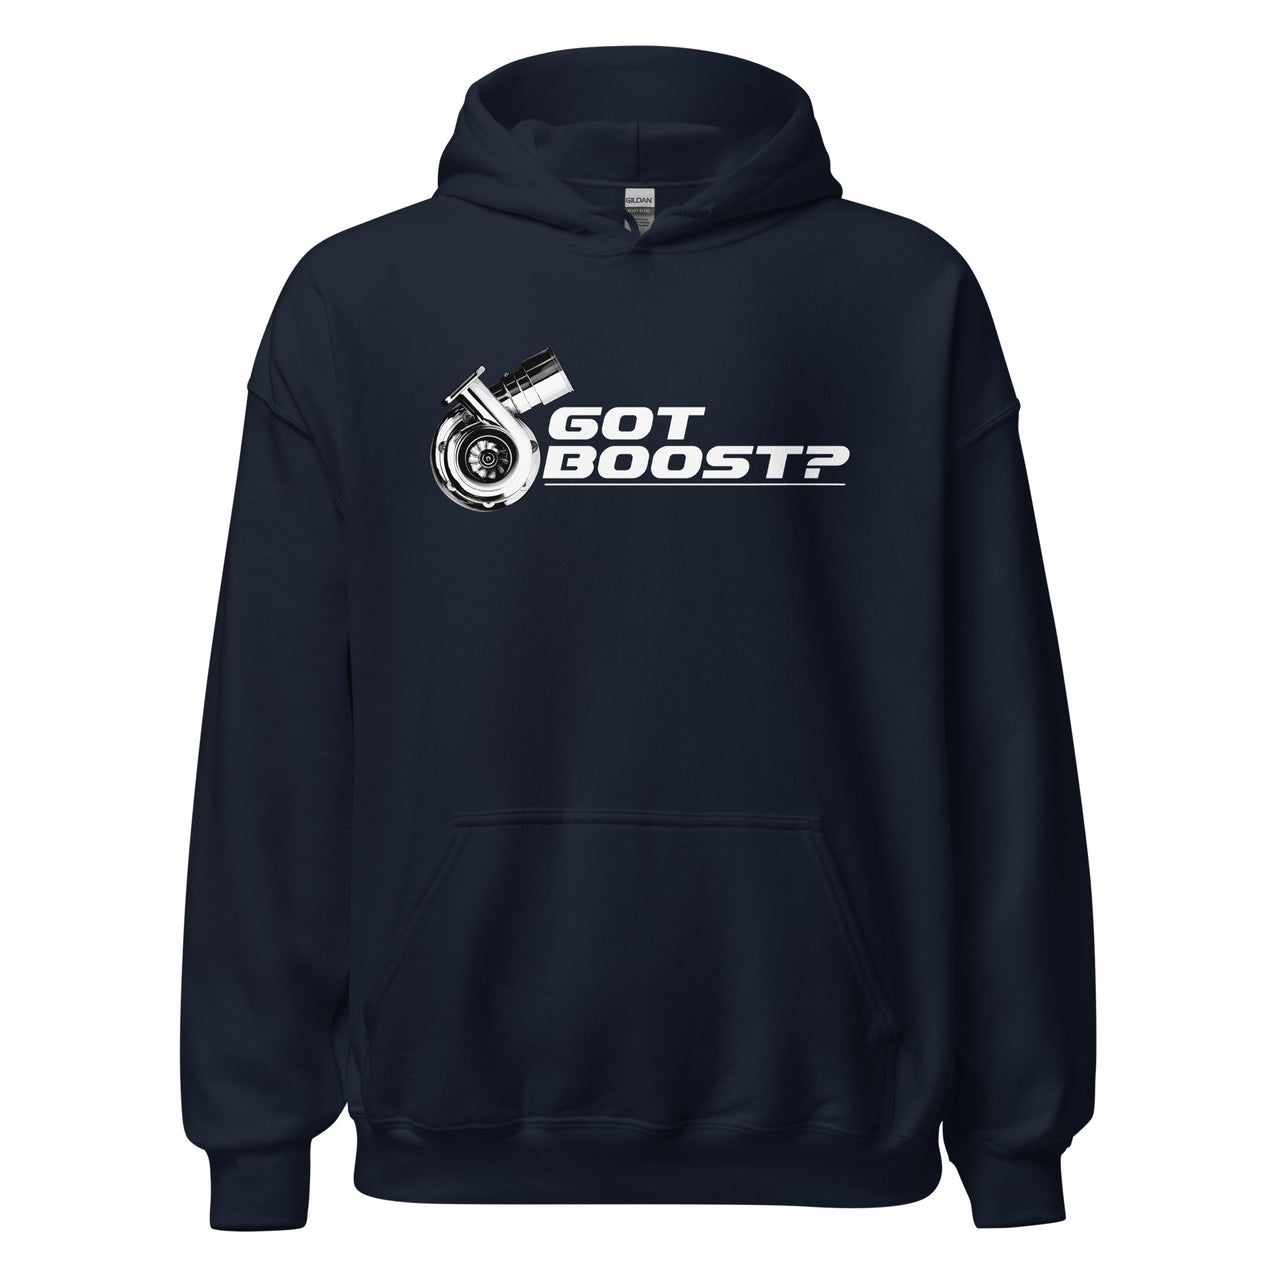 Got Boost? Turbo Hoodie Sweatshirt